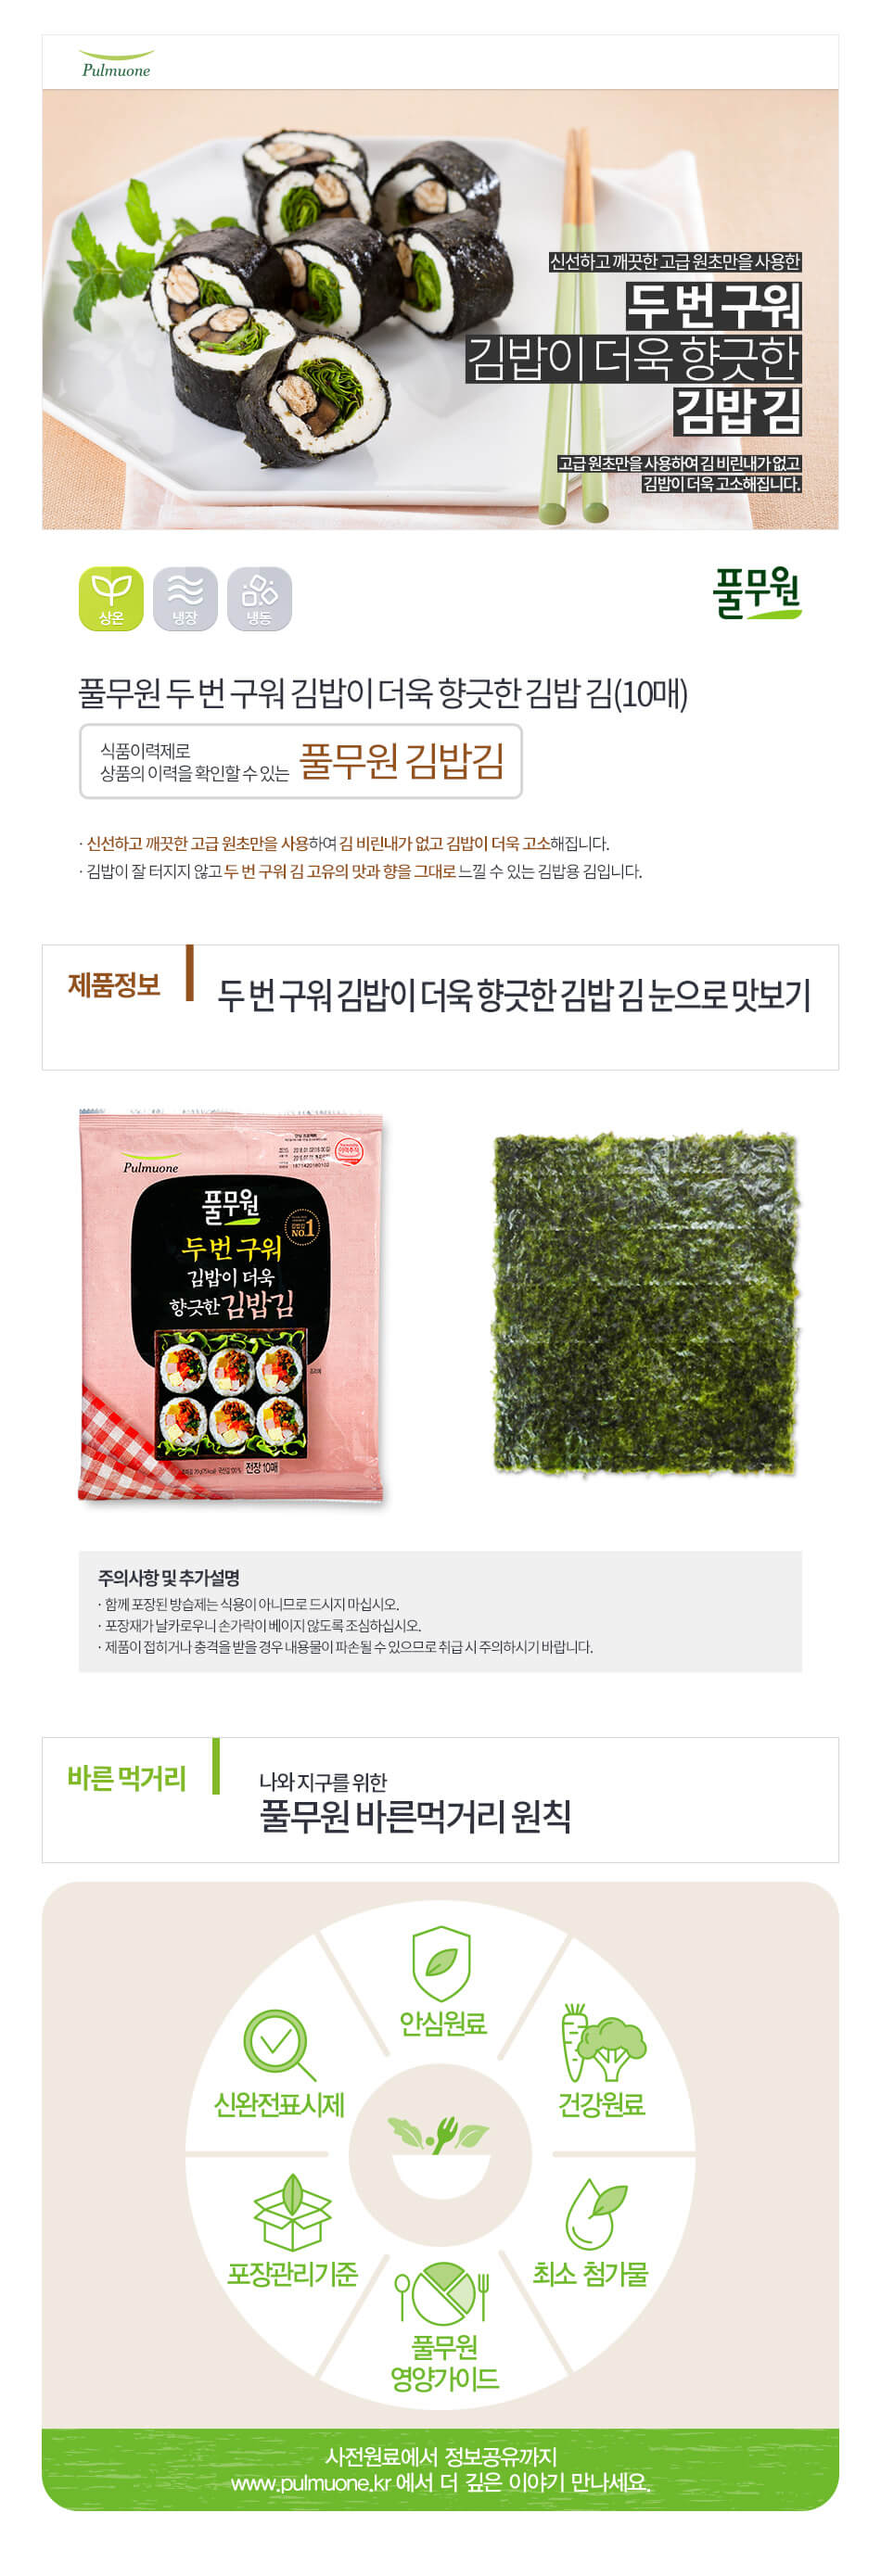 韓國食品-[풀무원] 네번 구워 향긋한 김밥김 20g (10매)